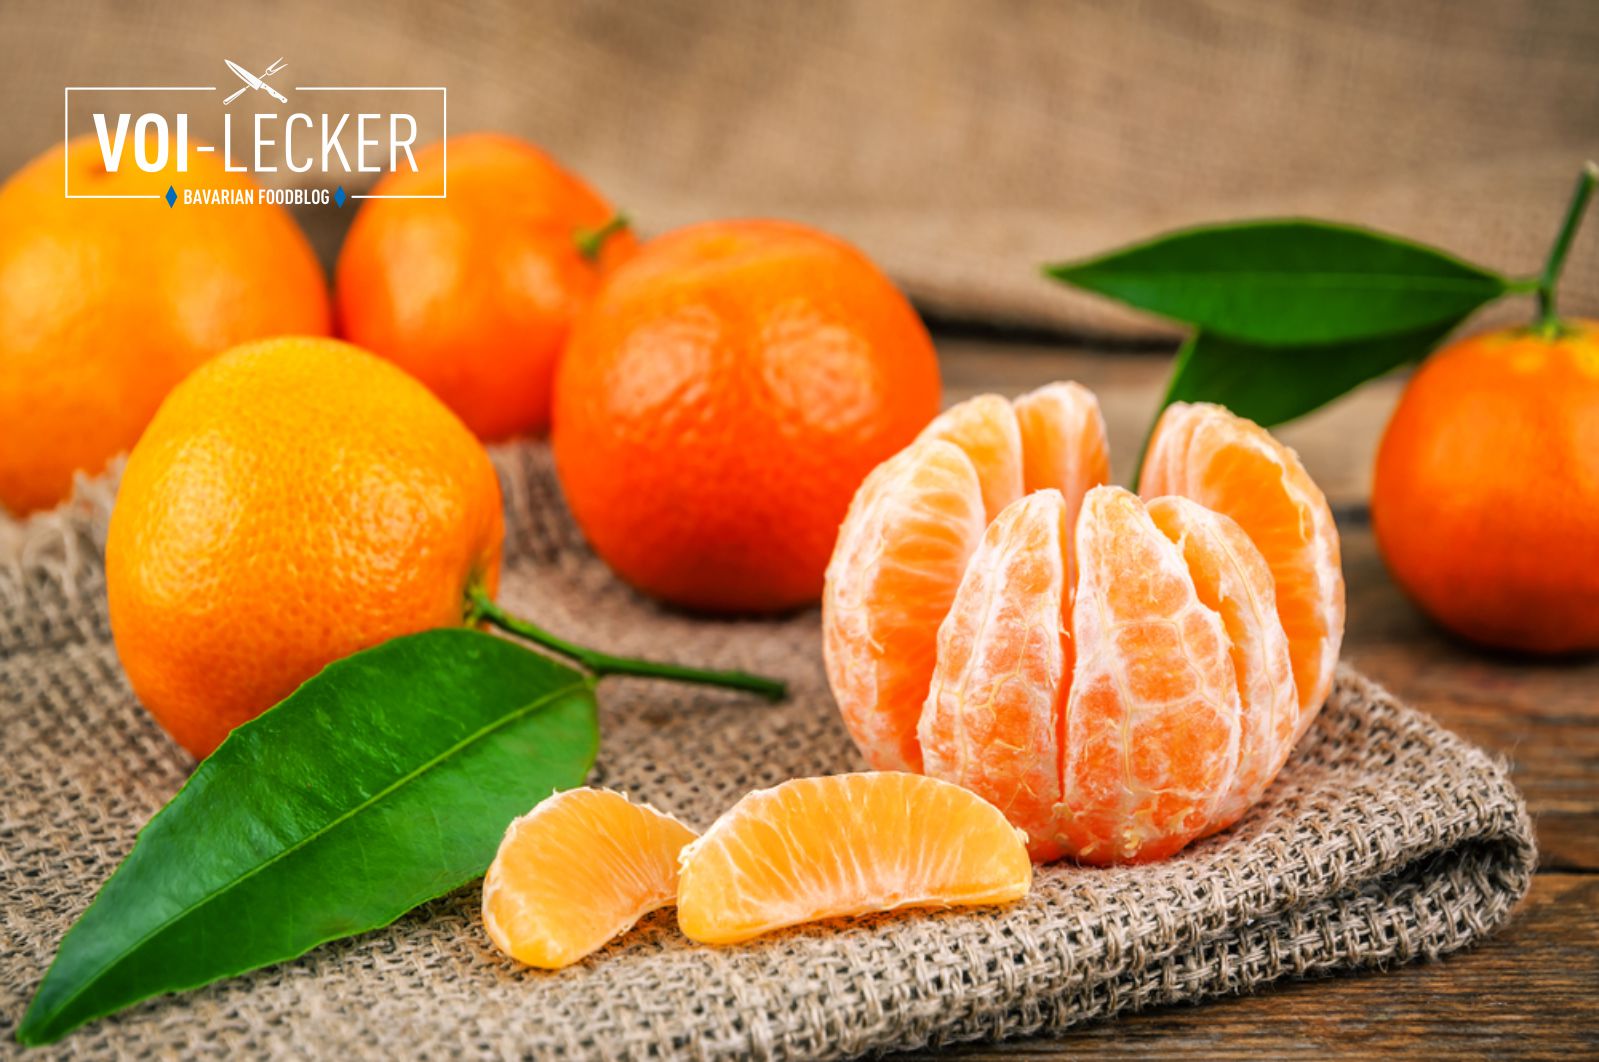 satsuma clementine tangerine